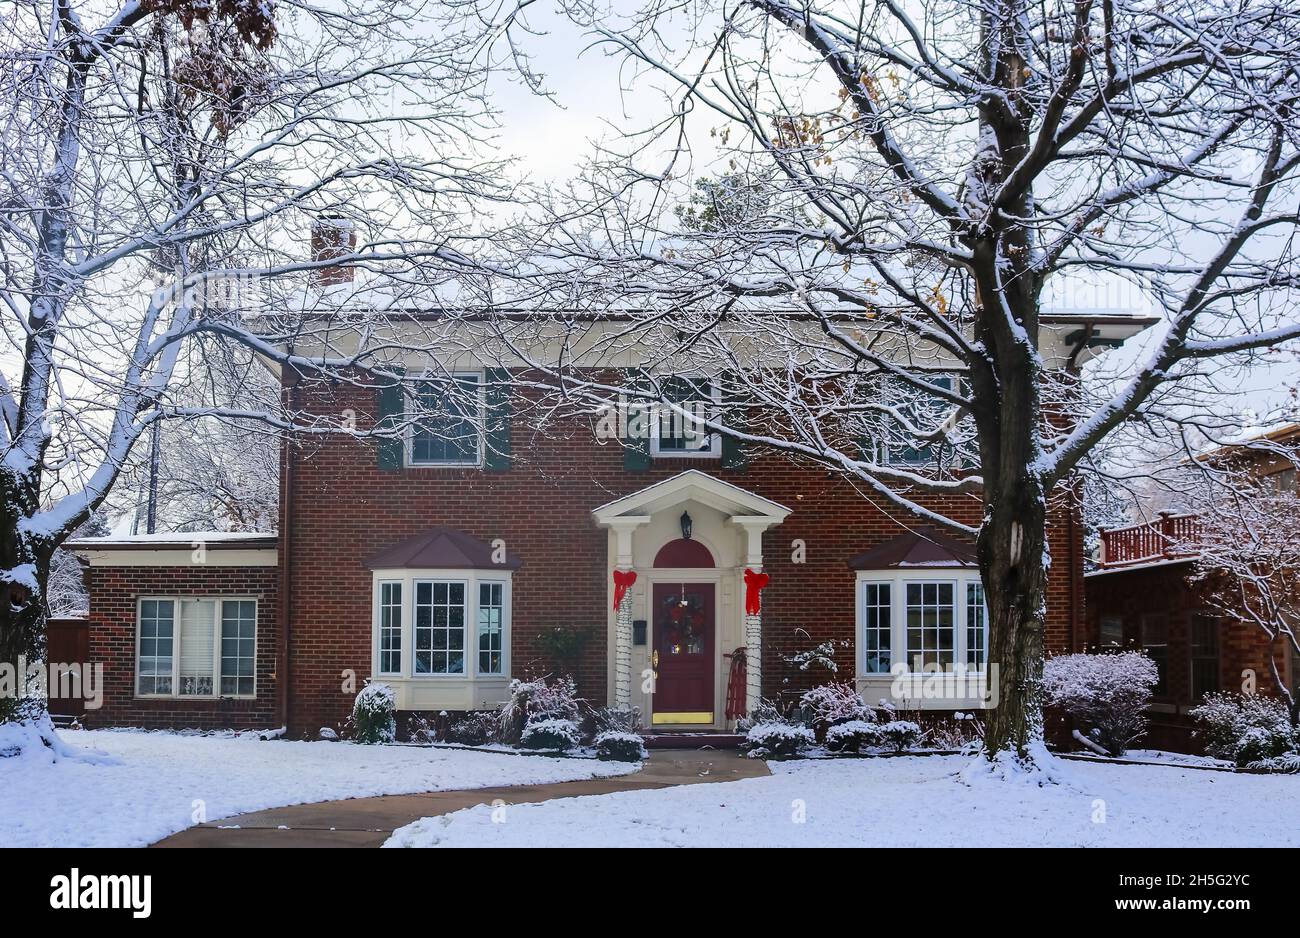 Belle maison en brique avec baies vitrées avec arbre de Noël montrant à travers et décoré des piliers et traîneau sur le porche dans la neige encadrée par des arbres d'hiver Banque D'Images